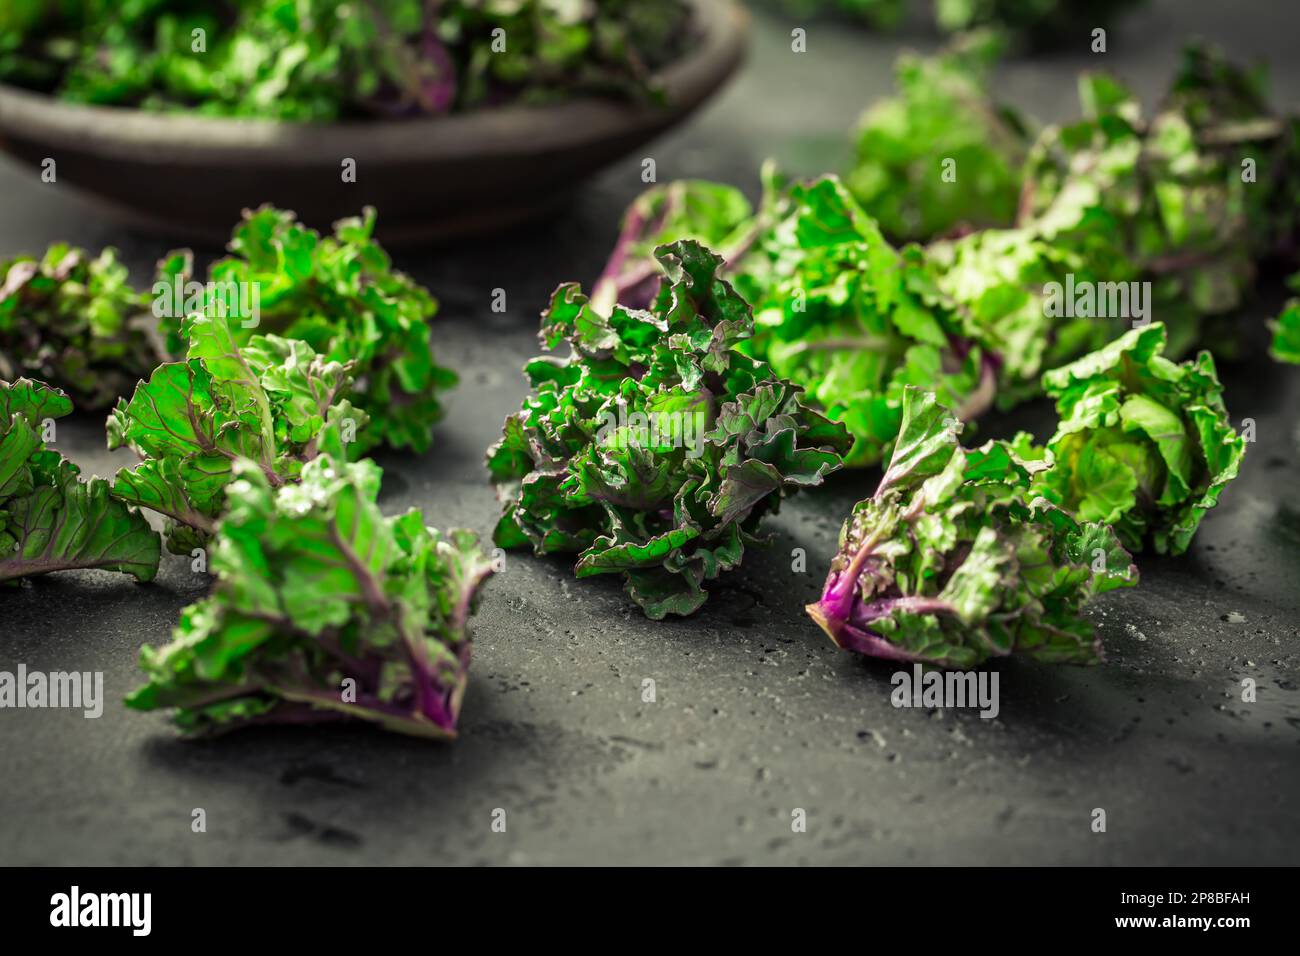 Kalette, choux de kale, choux de fleur sur fond noir. Plante hybride, croisement entre kale et choux de Bruxelles, heathy légume d'hiver. Banque D'Images